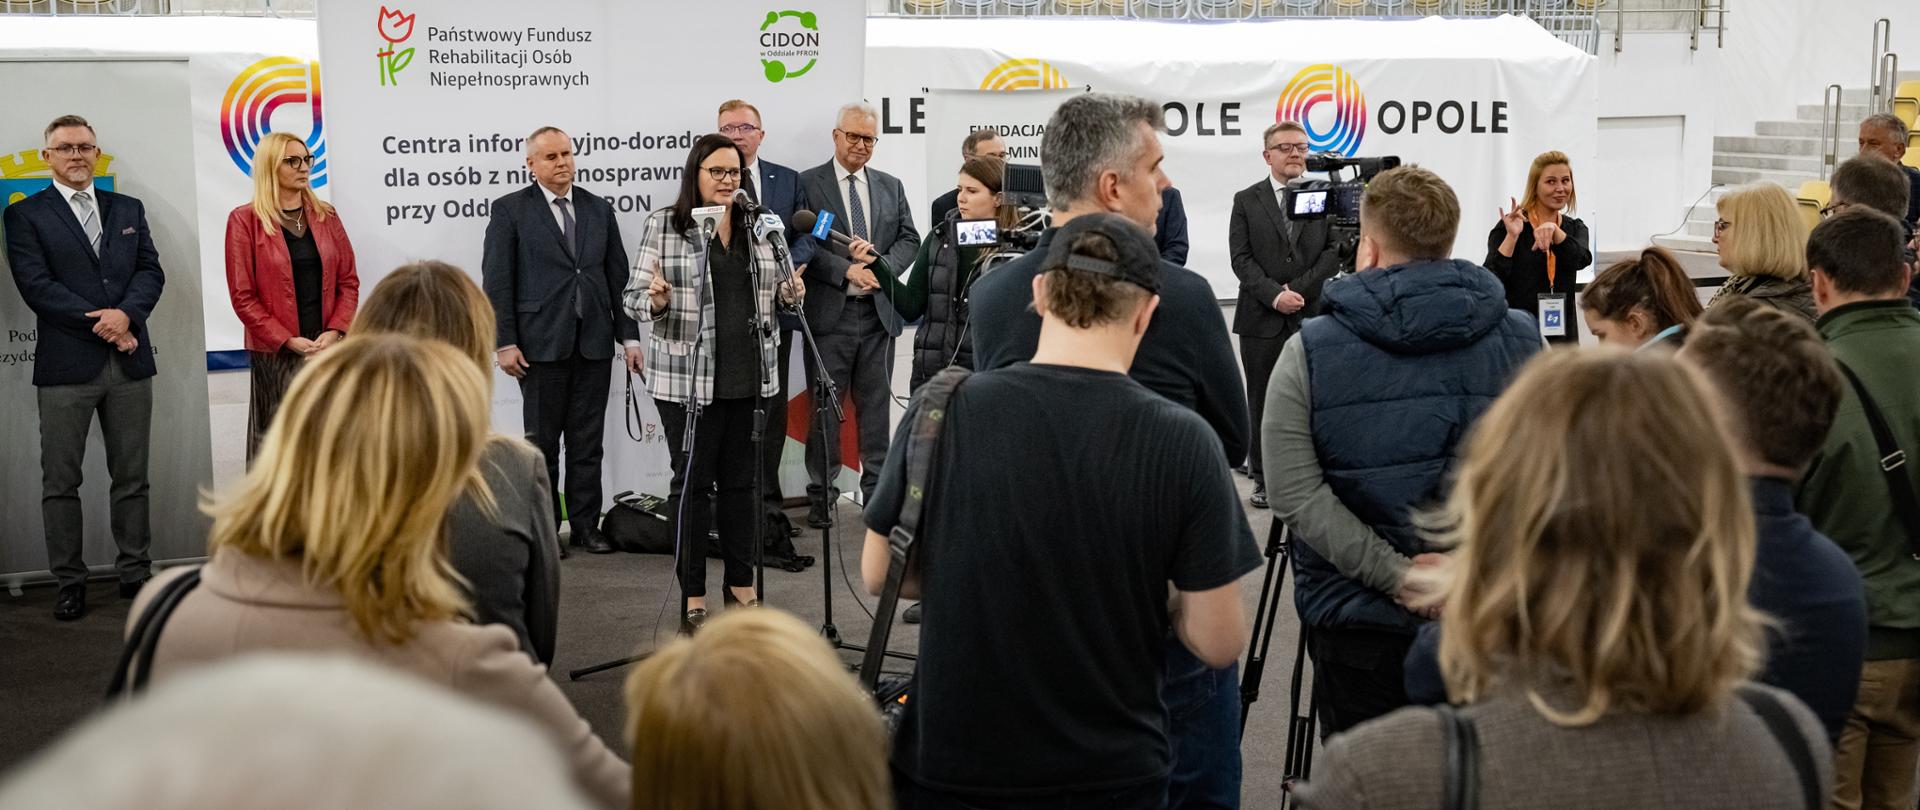 Grupa osób podczas konferencji prasowej. Przed mikrofonami wiceminister Małgorzata Jarosińska-Jedynak.